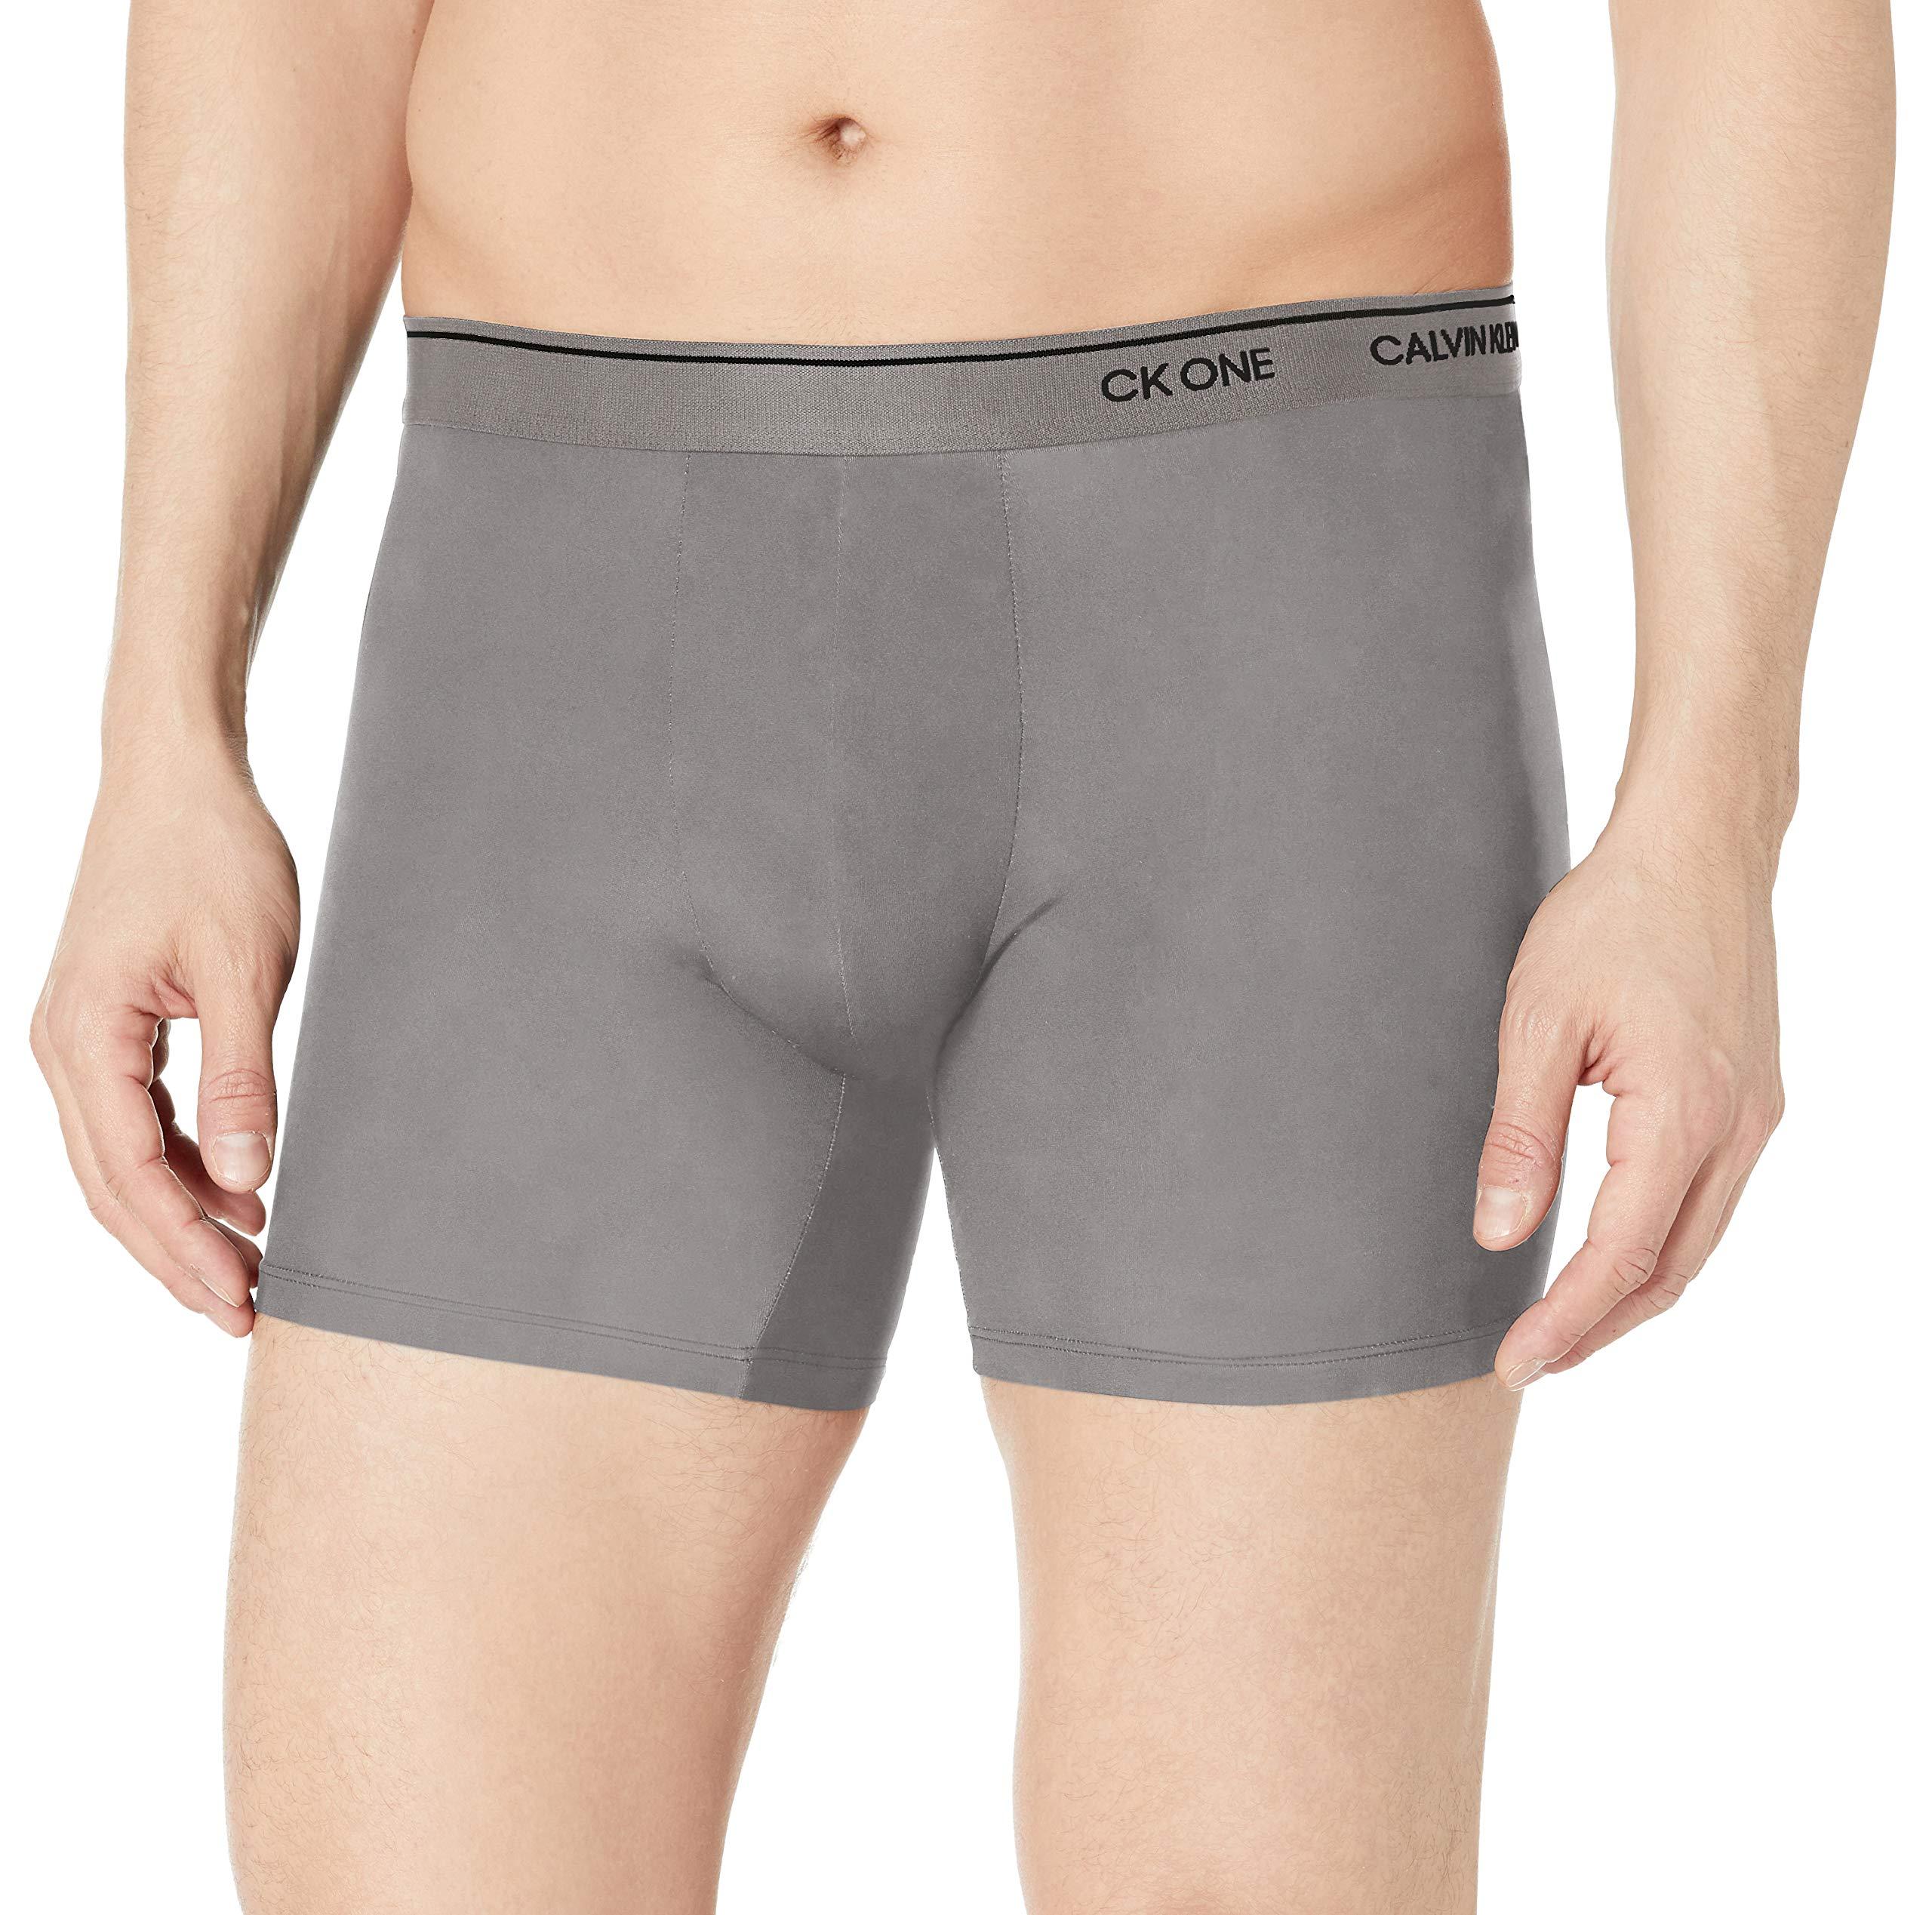 Calvin Klein Underwear Ck One Micro Boxer Briefs in Grey Sky (Gray) for Men - Save 35% - Lyst